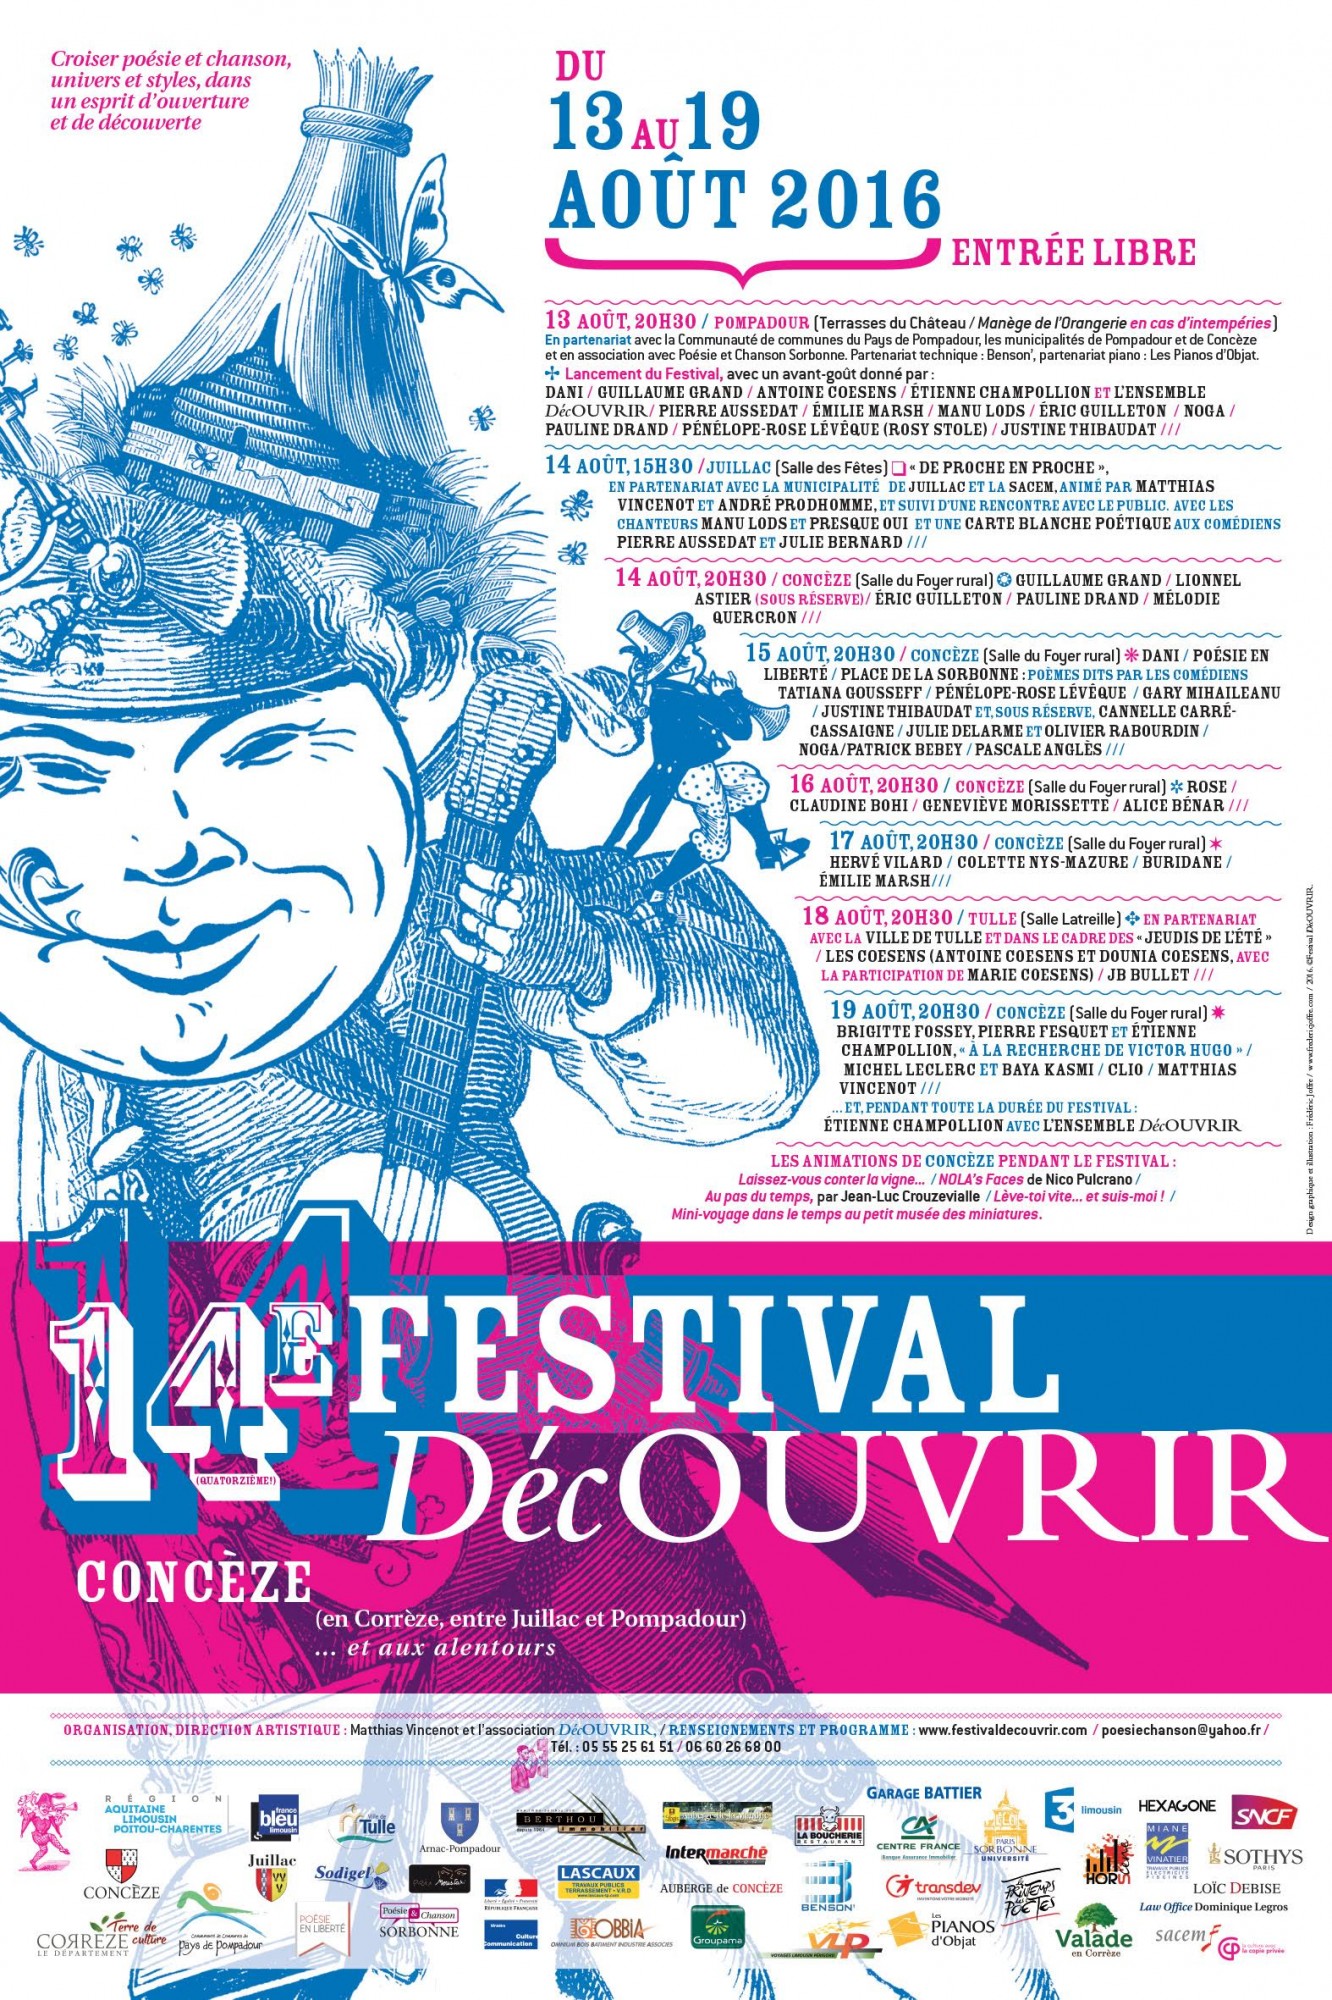 Affiche du 14e Festival DécOUVRIR - Concèze - du 13 au 19 août 2016